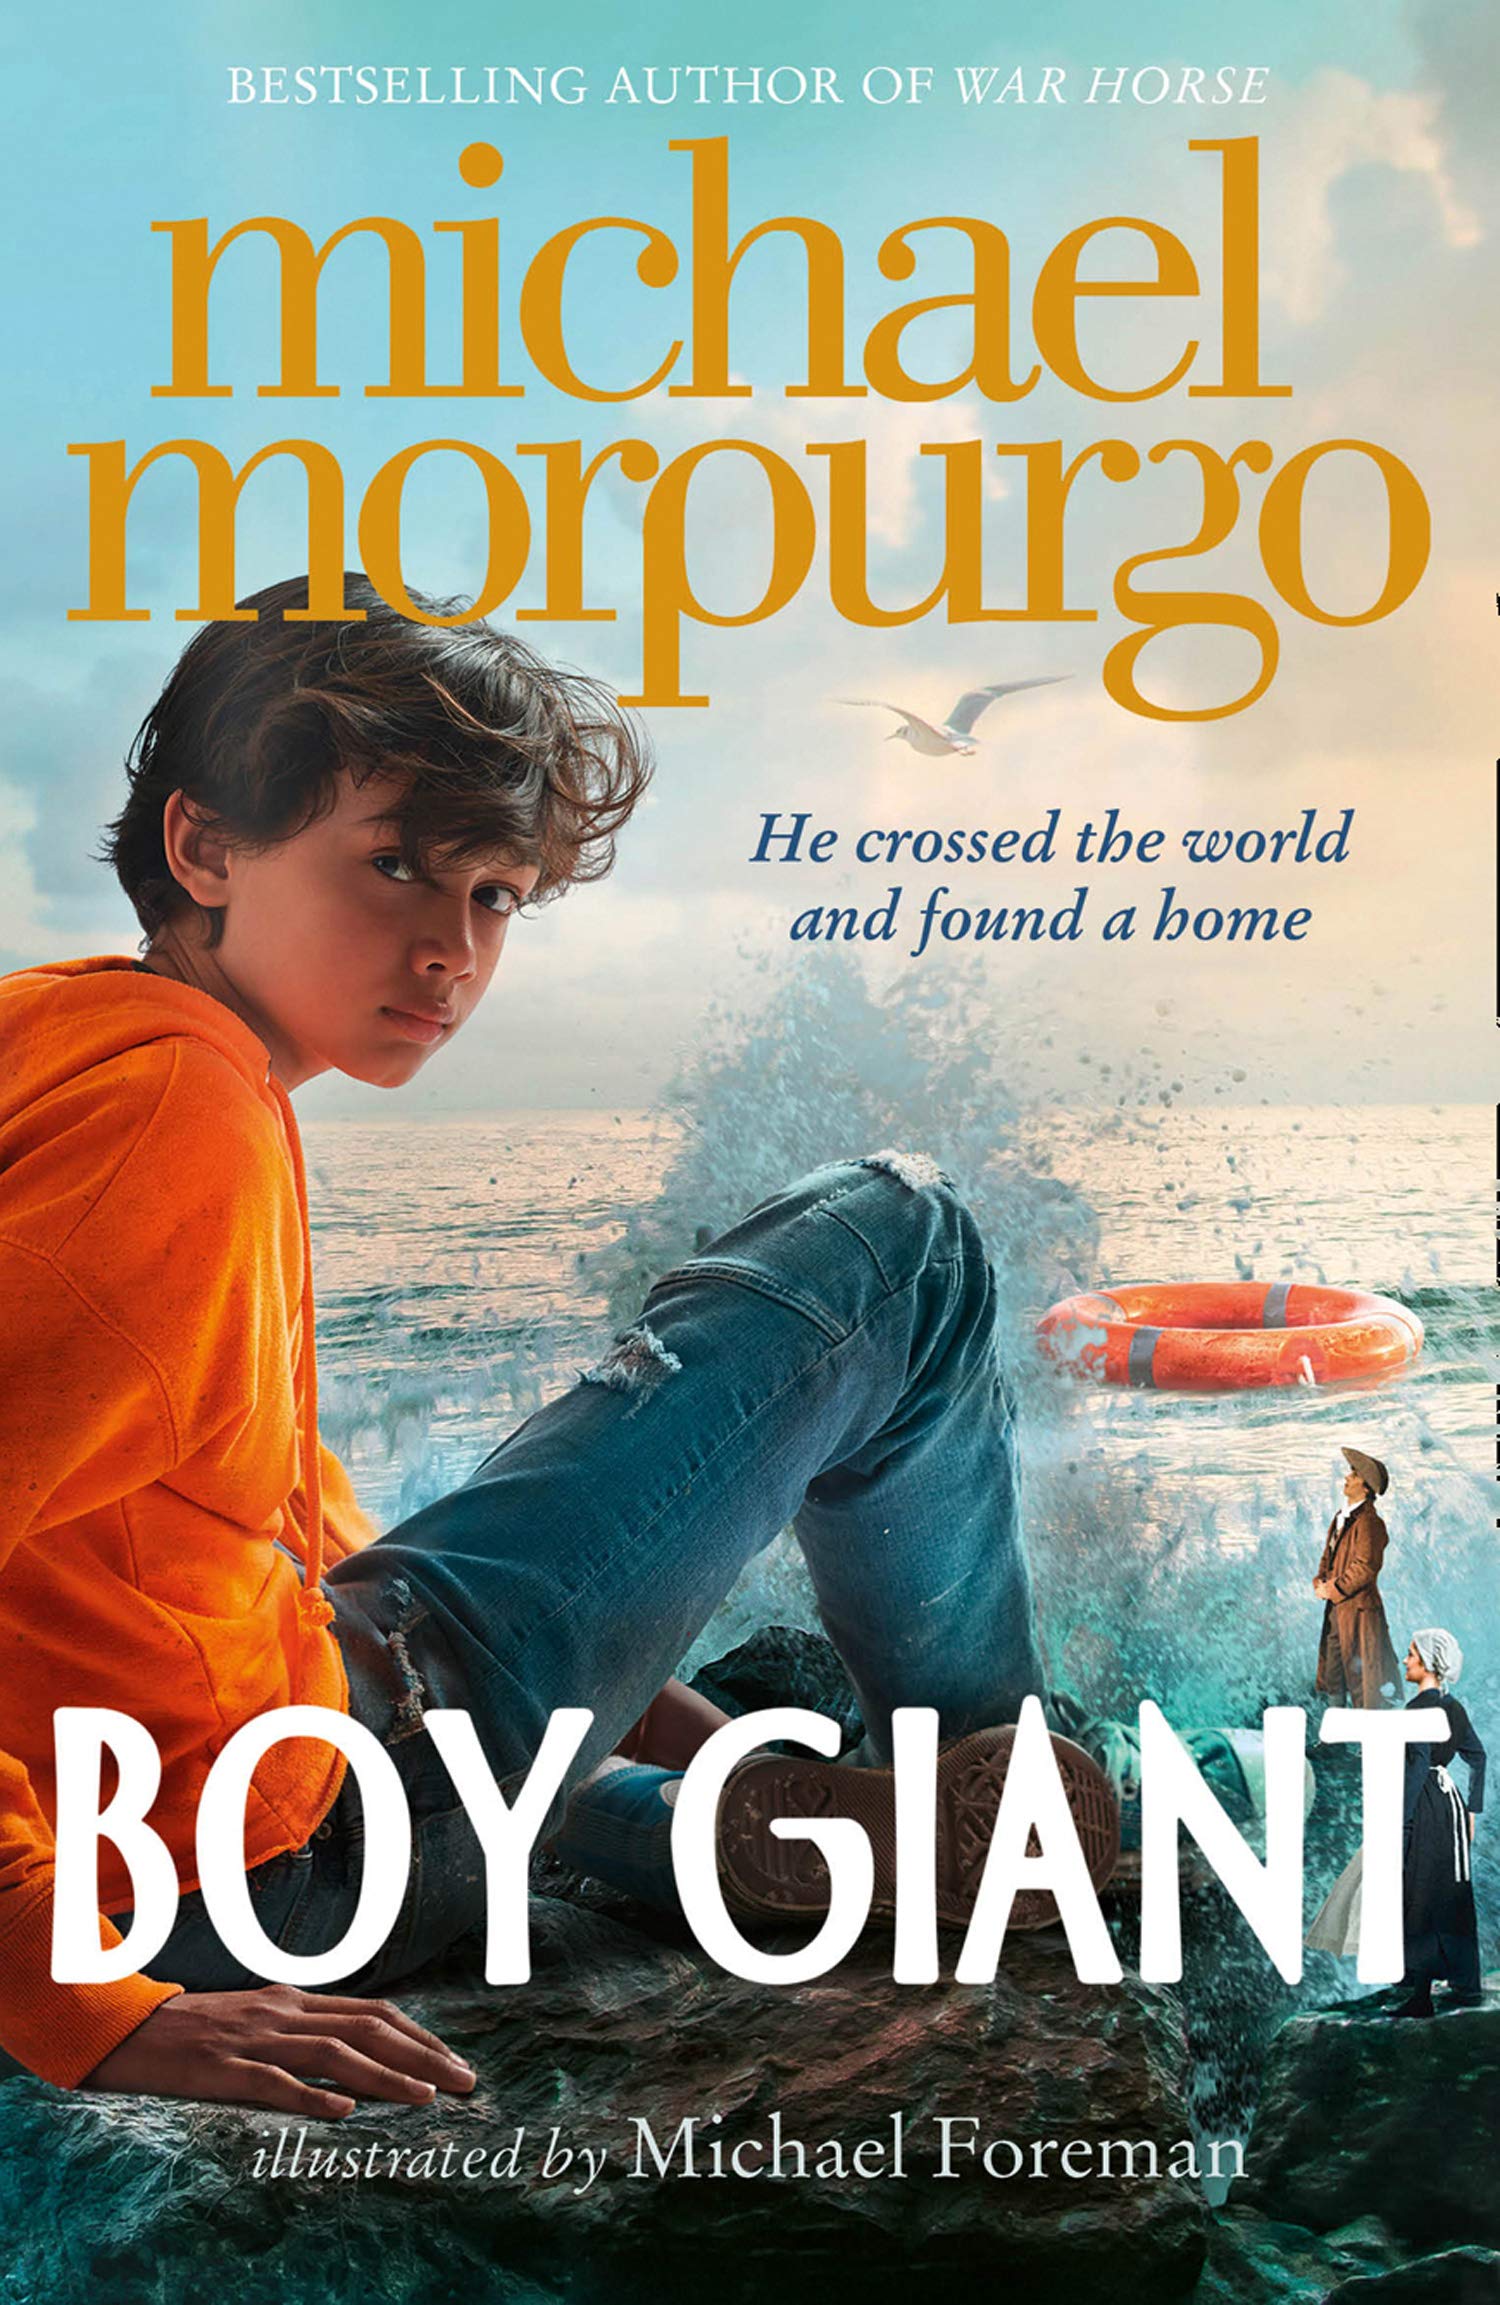 Boy Giant - Son of Gulliver by Michael Morpurgo